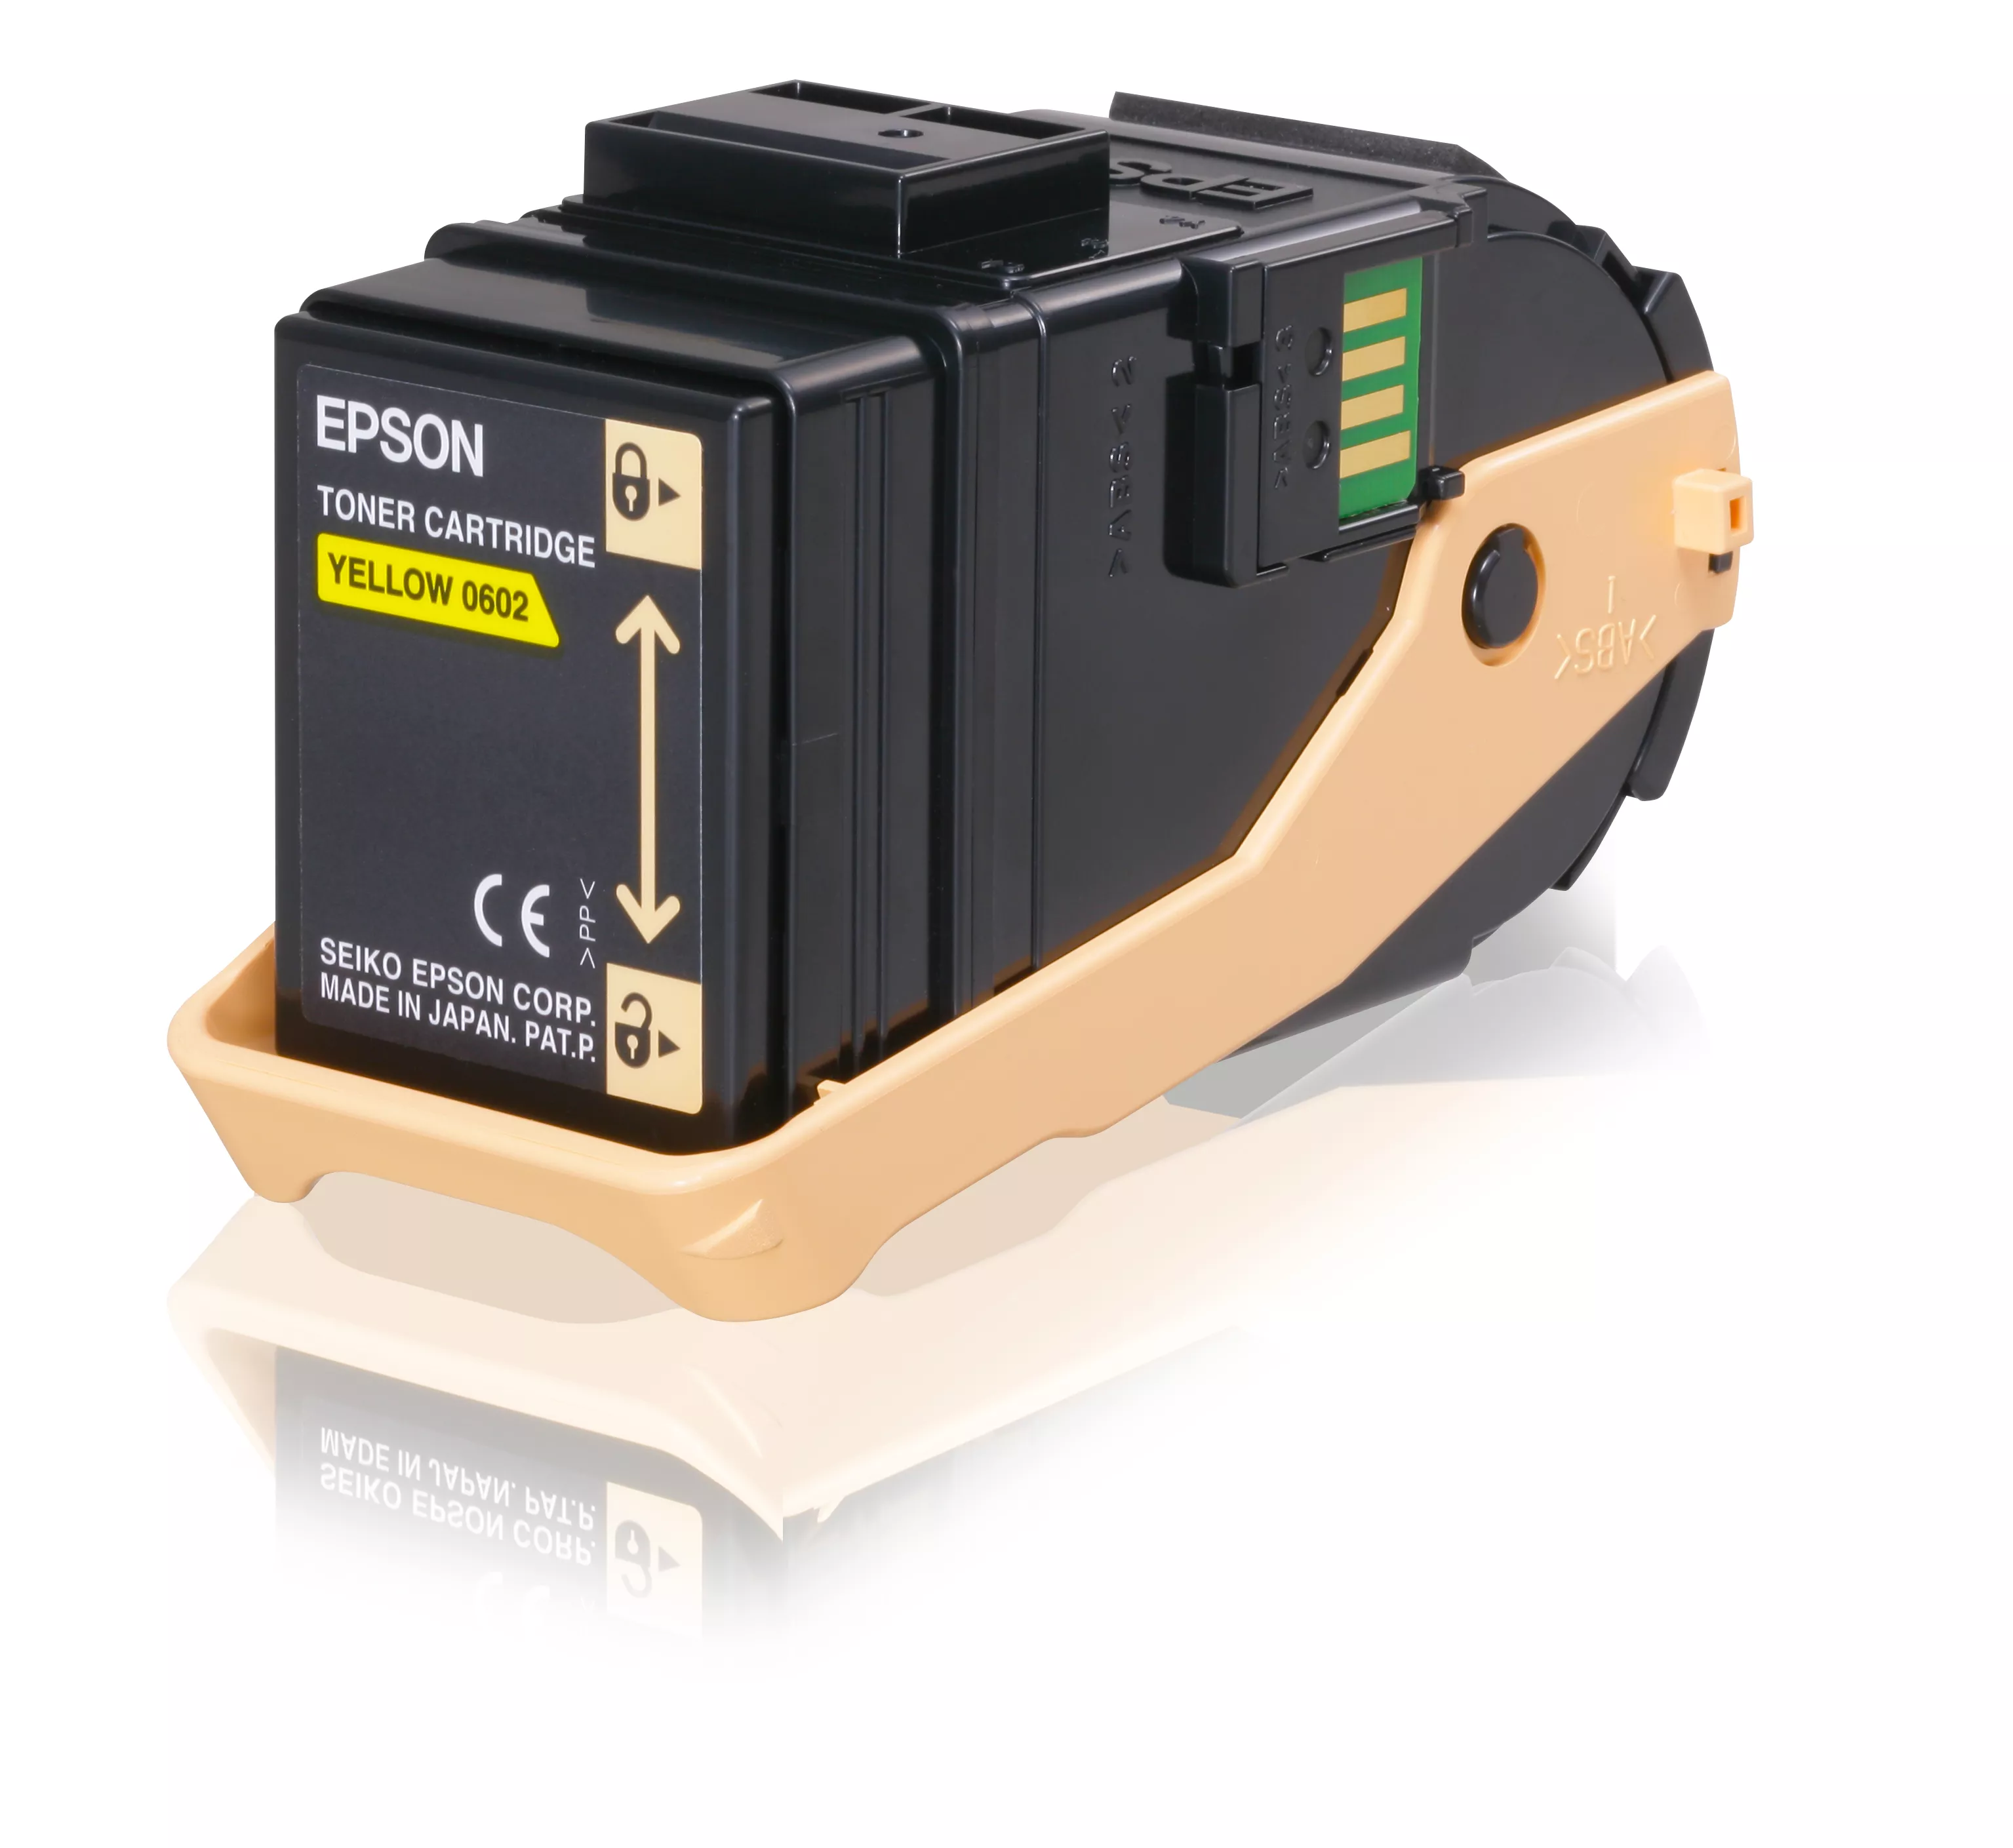 Revendeur officiel EPSON AL-C9300N cartouche de toner jaune capacité